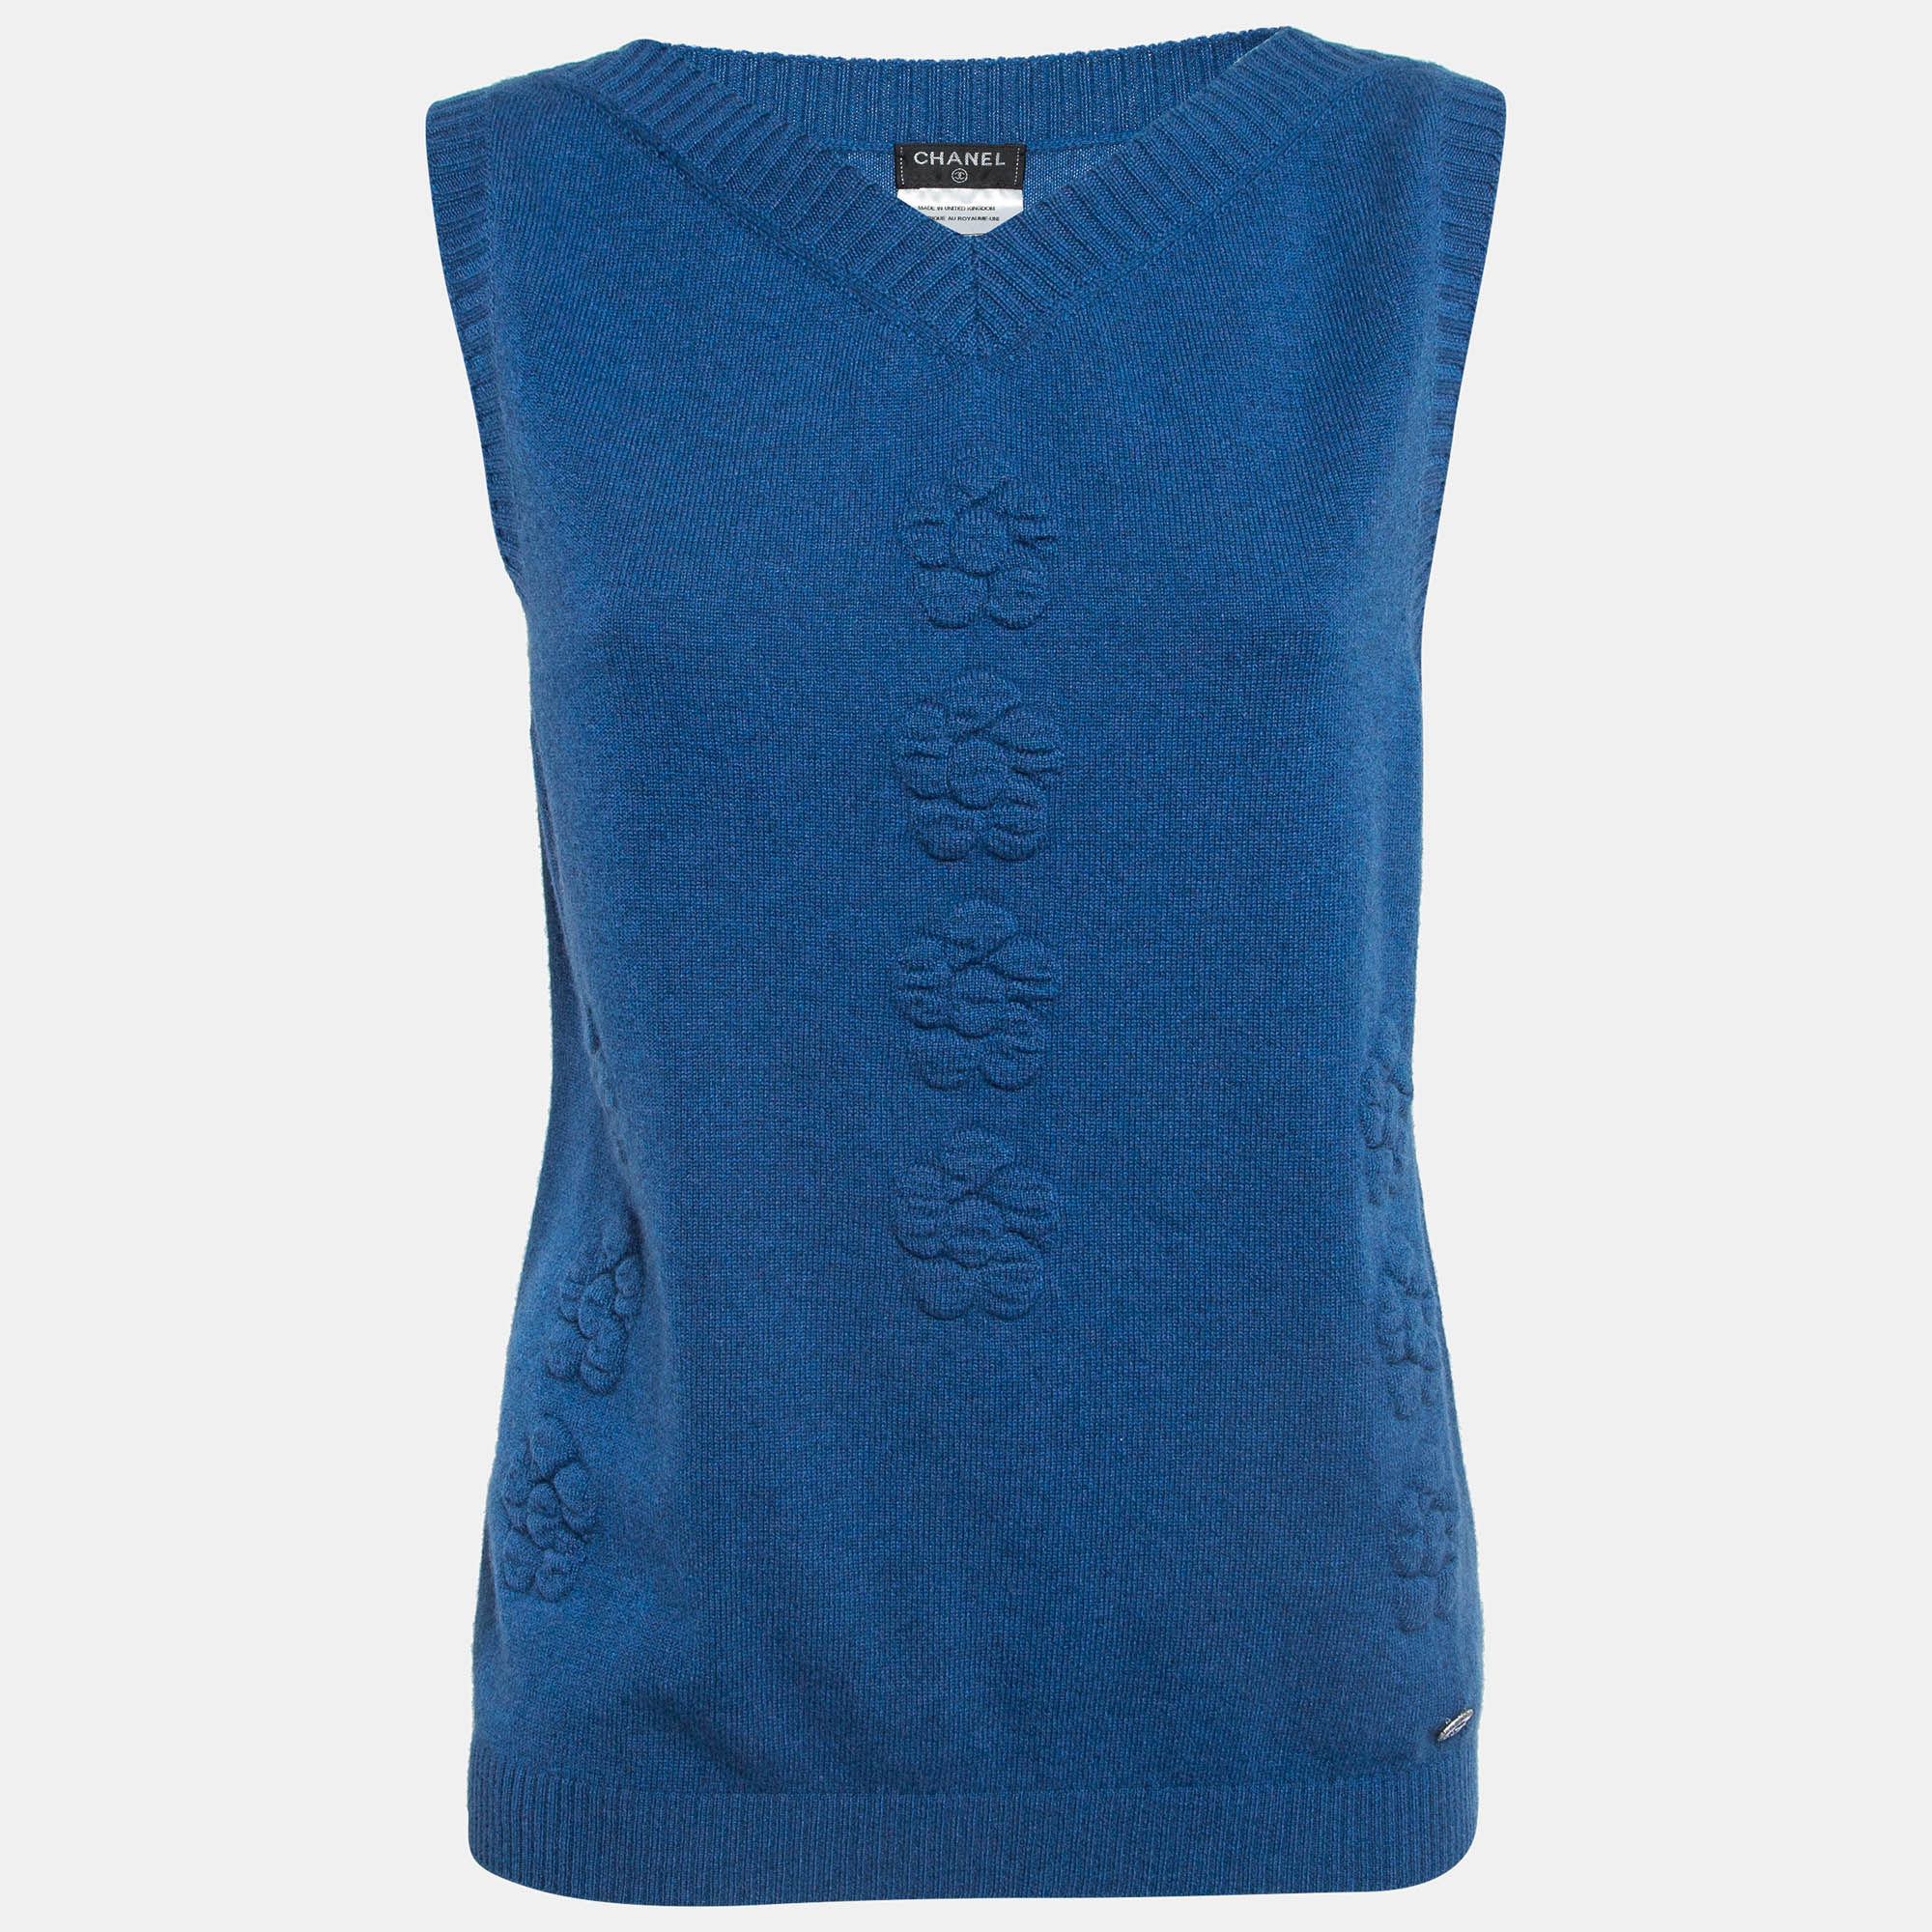 

Chanel Blue Floral Textured Cashmere Knit V-Neck Vest